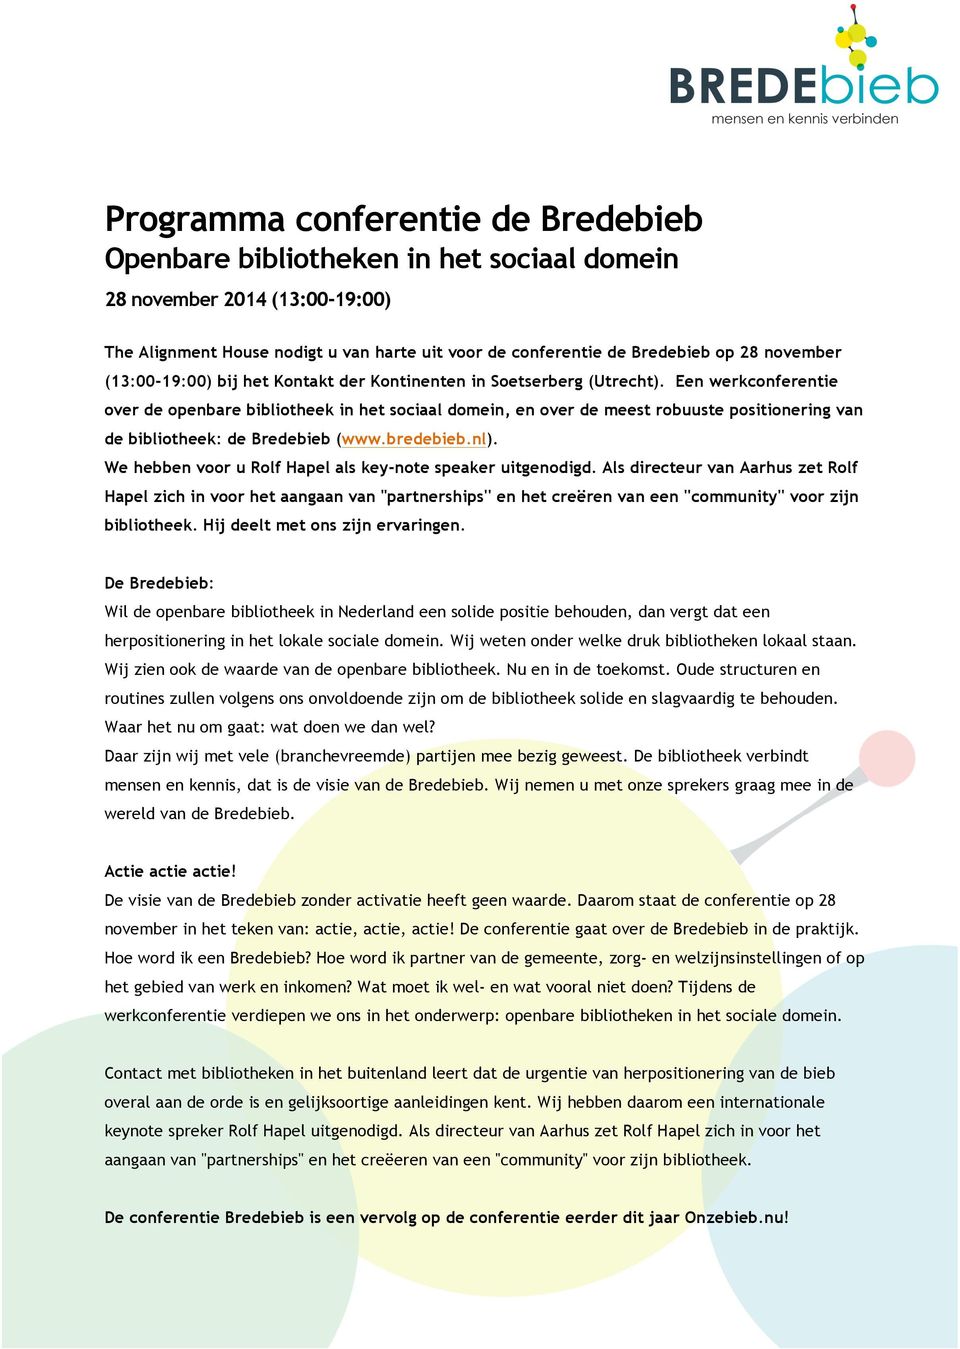 Een werkconferentie over de openbare bibliotheek in het sociaal domein, en over de meest robuuste positionering van de bibliotheek: de Bredebieb (www.bredebieb.nl).